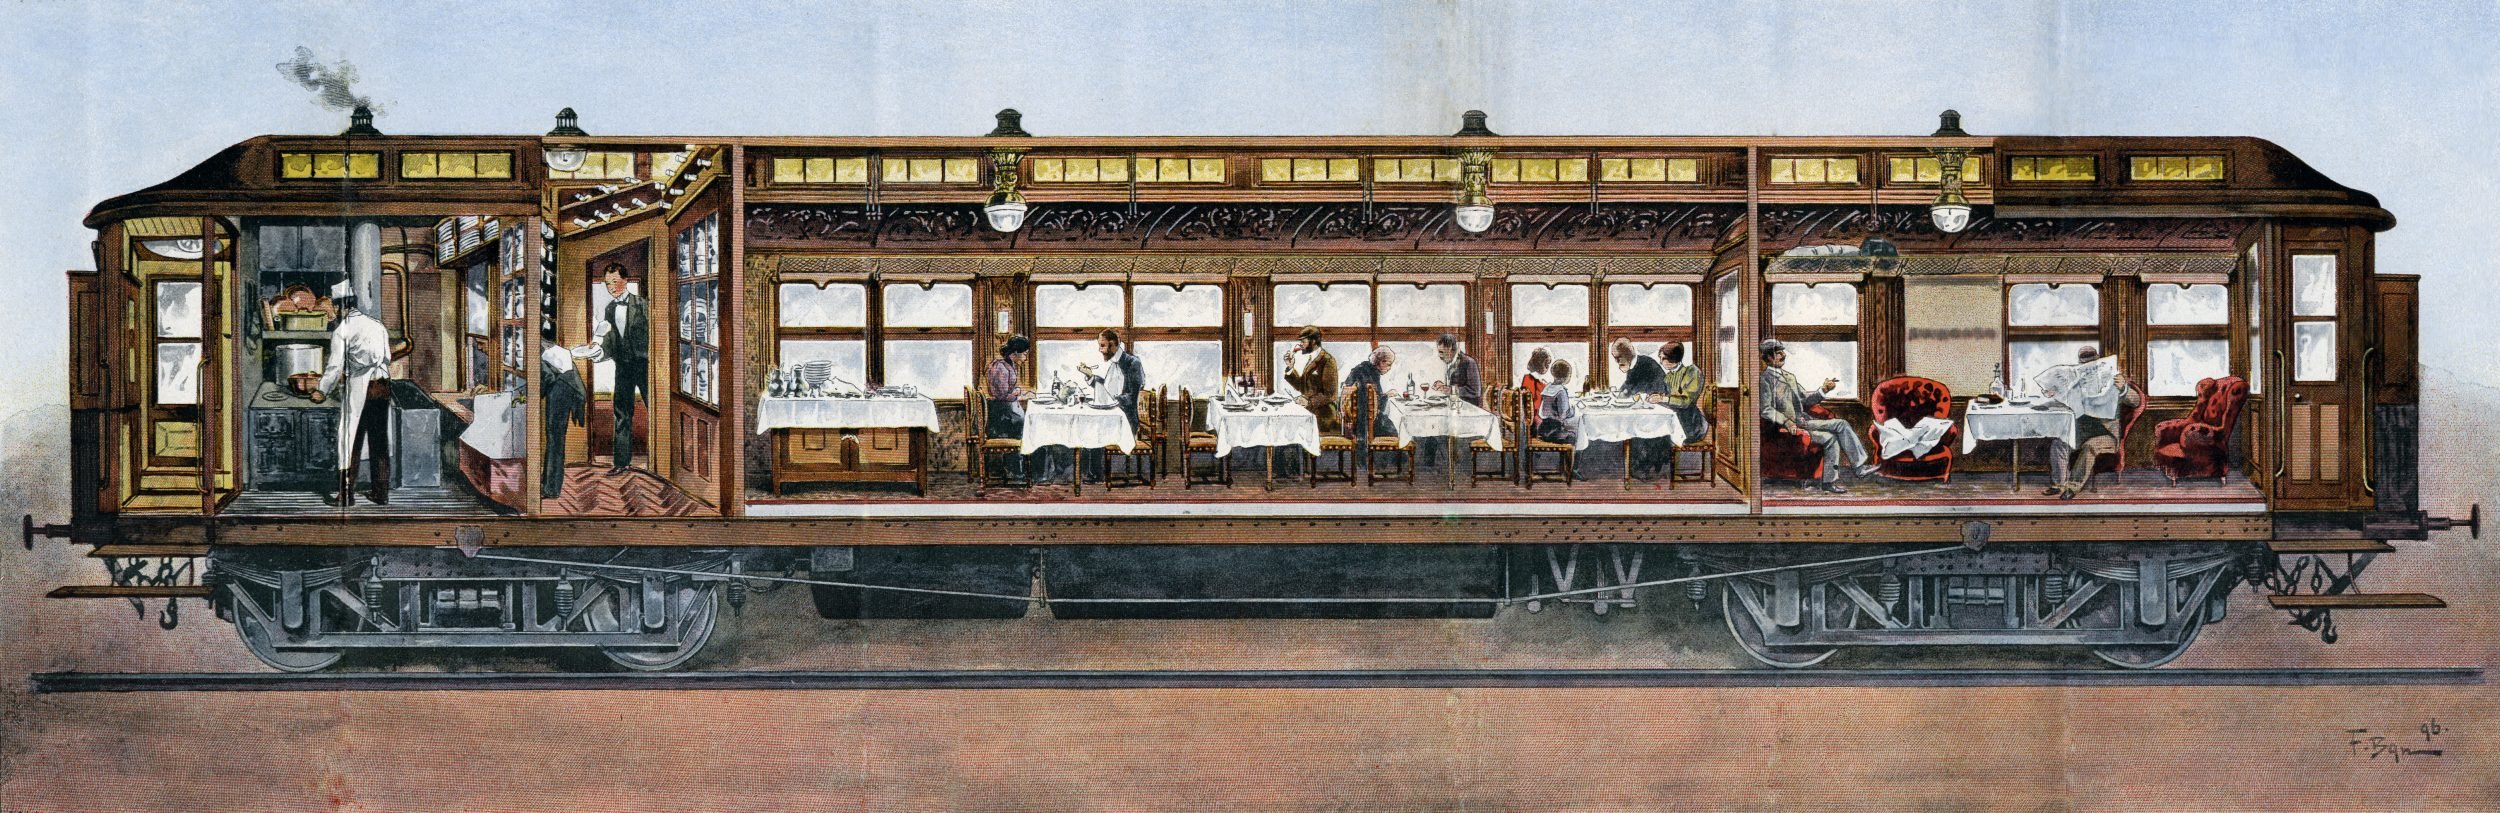 Виолончель перевозится в вагоне поезда. Поезд Восточный экспресс 19 века. Вагон-ресторан Восточный экспресс 19 века. Вагон “Orient Express”. Восточный экспресс паровоз 19 век.